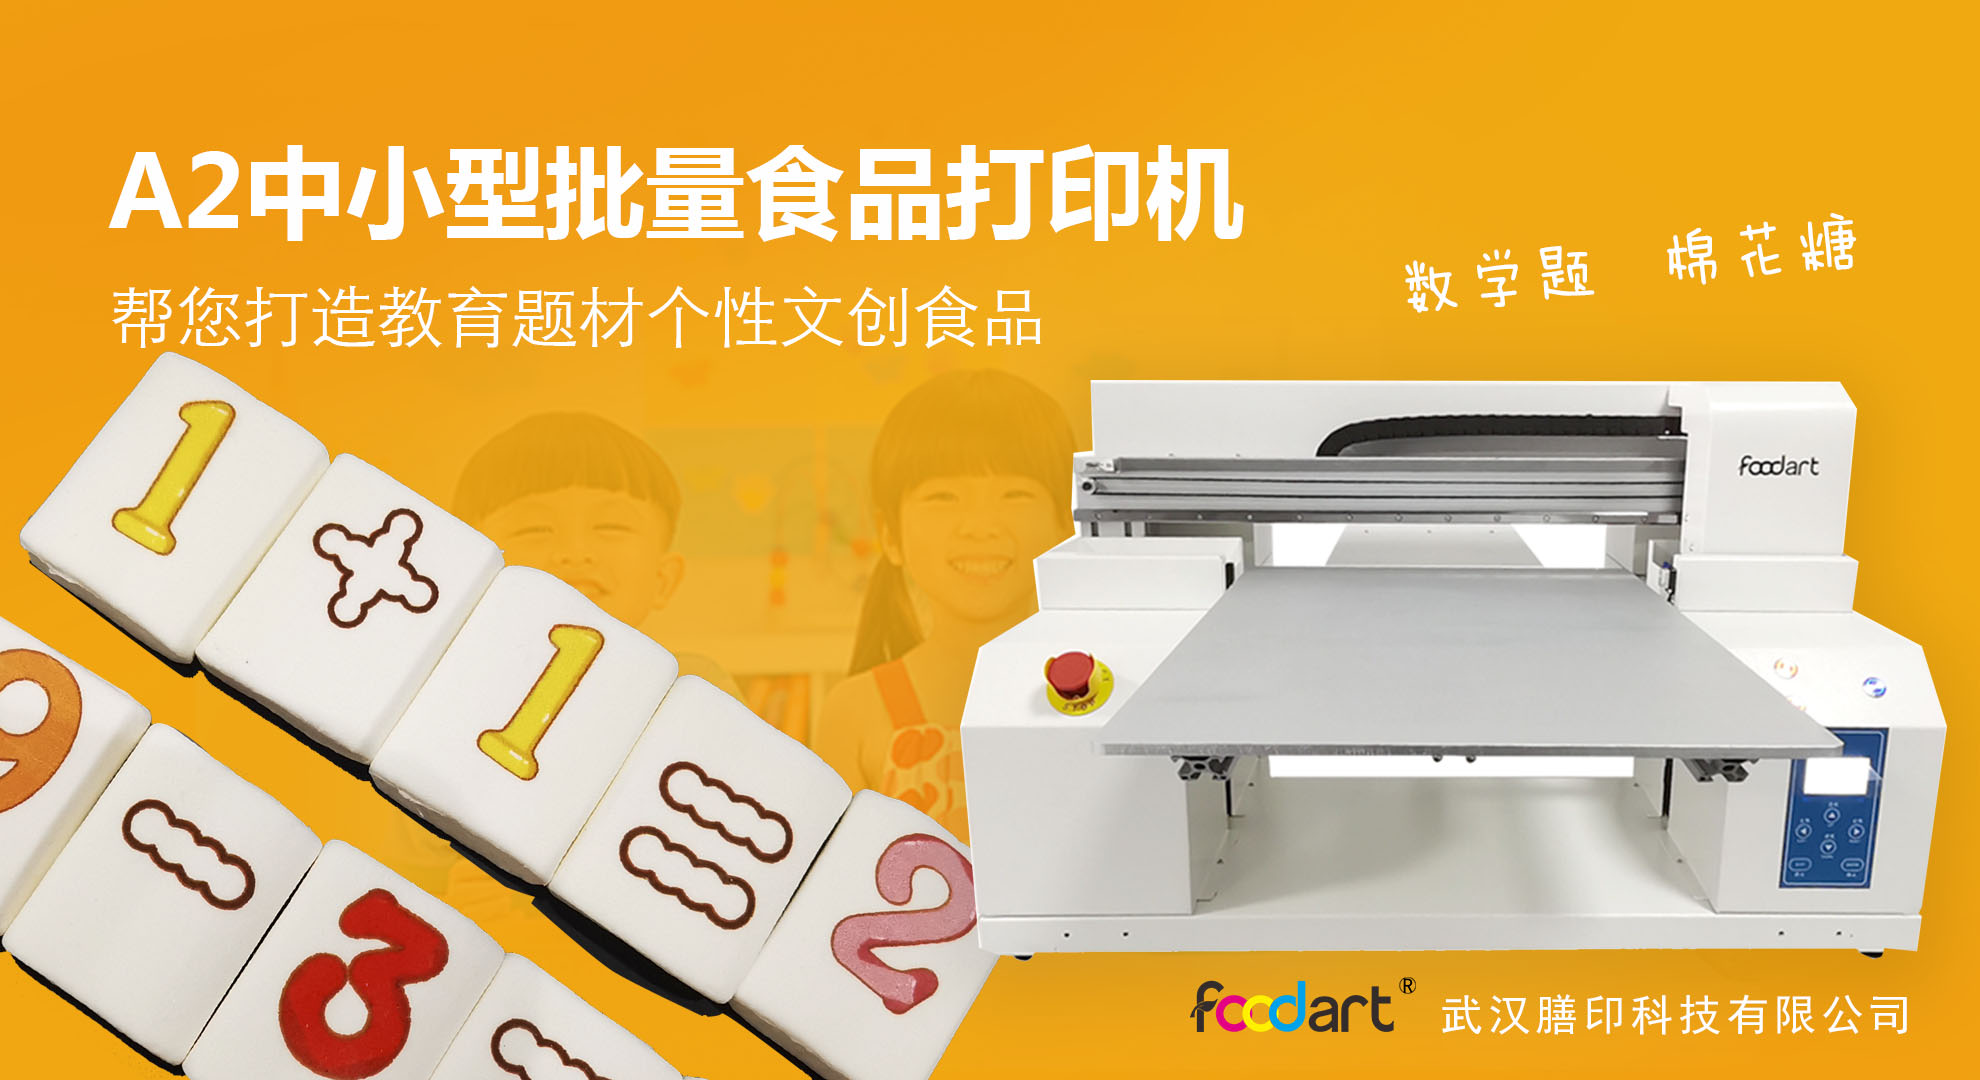 膳印科技数码食品印刷机一款一机多用的智能食品打印机